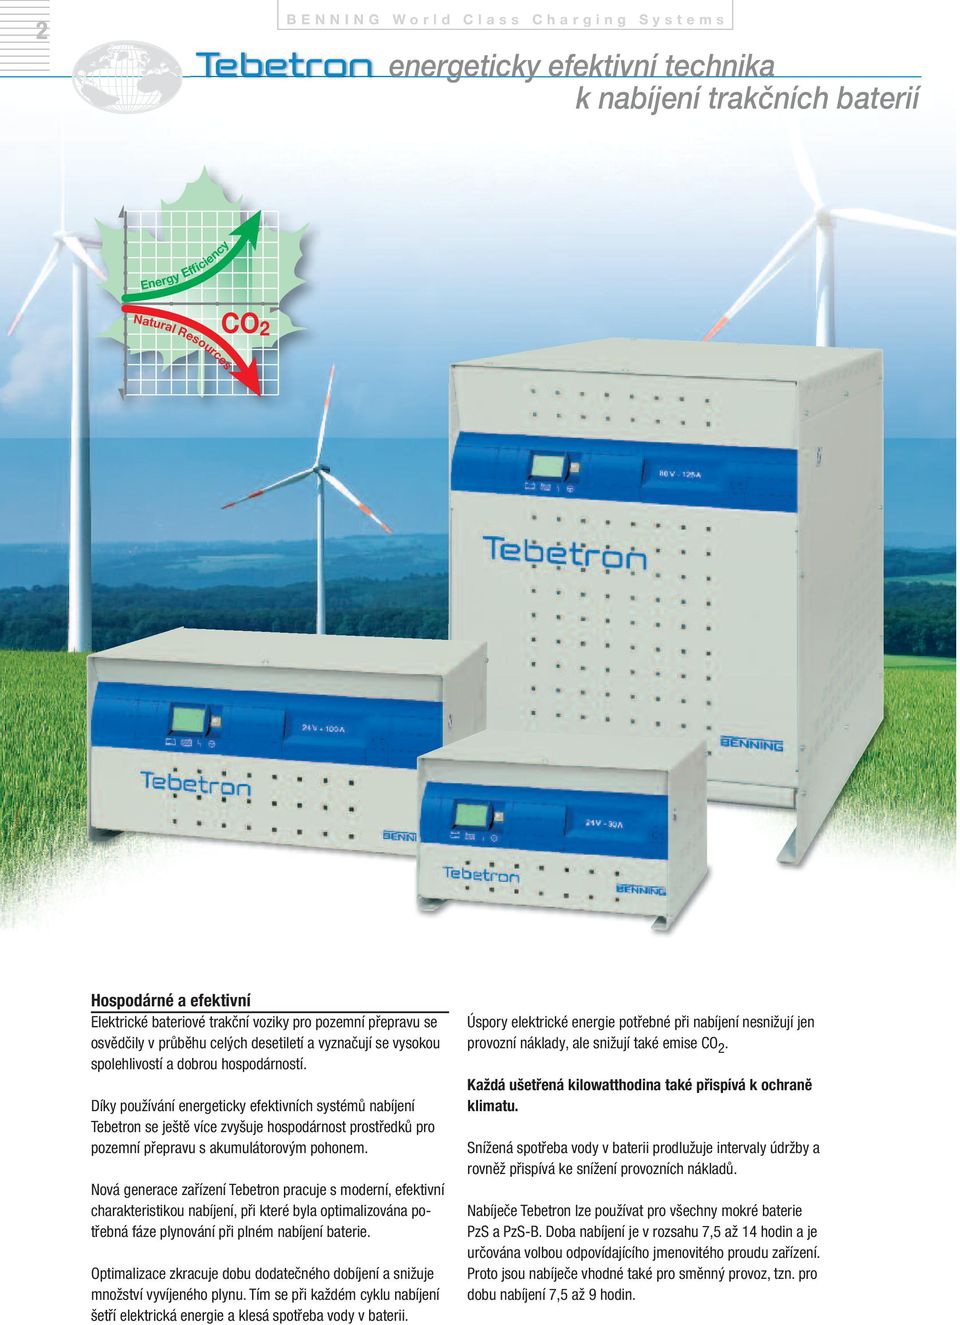 Díky používání energeticky efektivních systémů nabíjení Tebetron se ještě více zvyšuje hospodárnost prostředků pro pozemní přepravu s akumulátorovým pohonem.